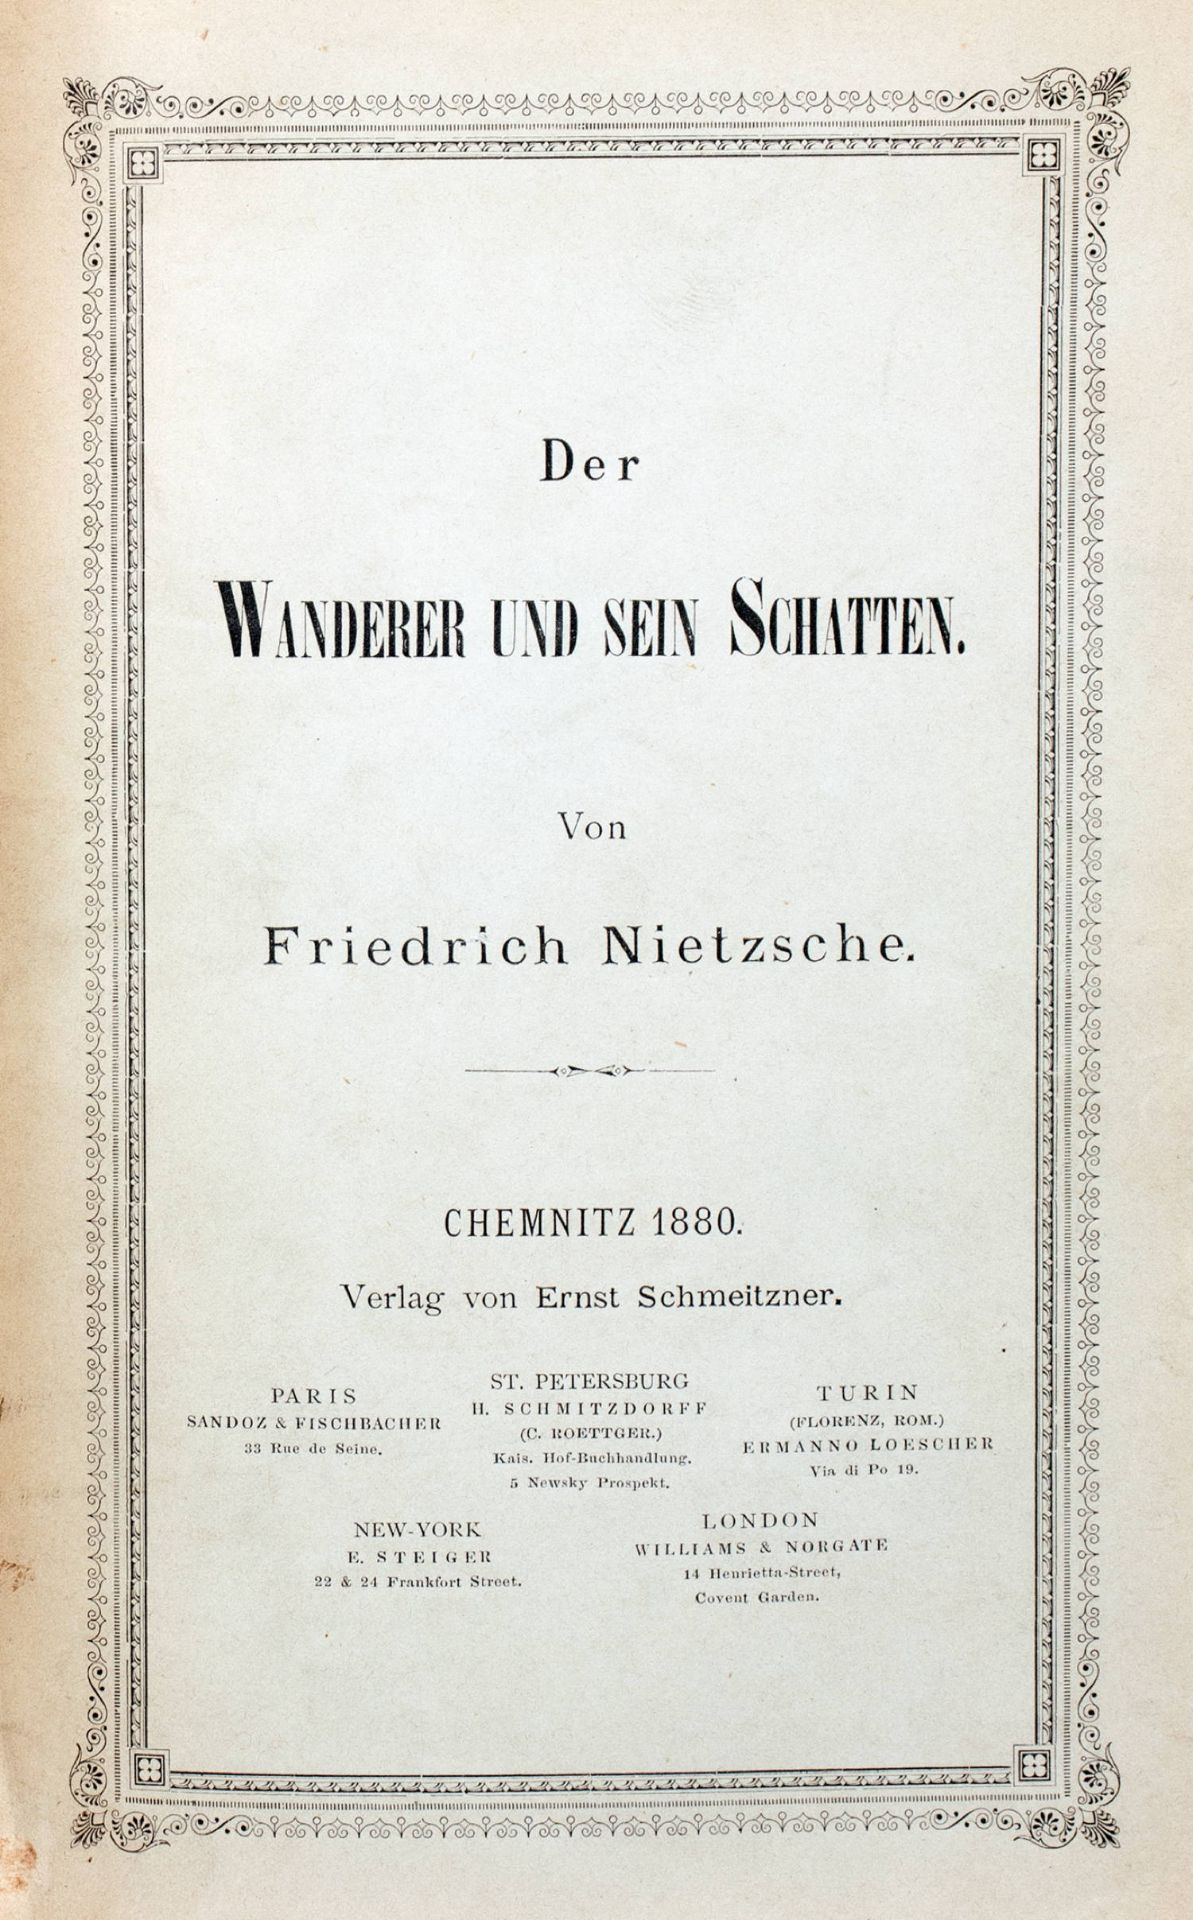 Friedrich Nietzsche. Menschliches, Allzumenschliches. - Image 3 of 3